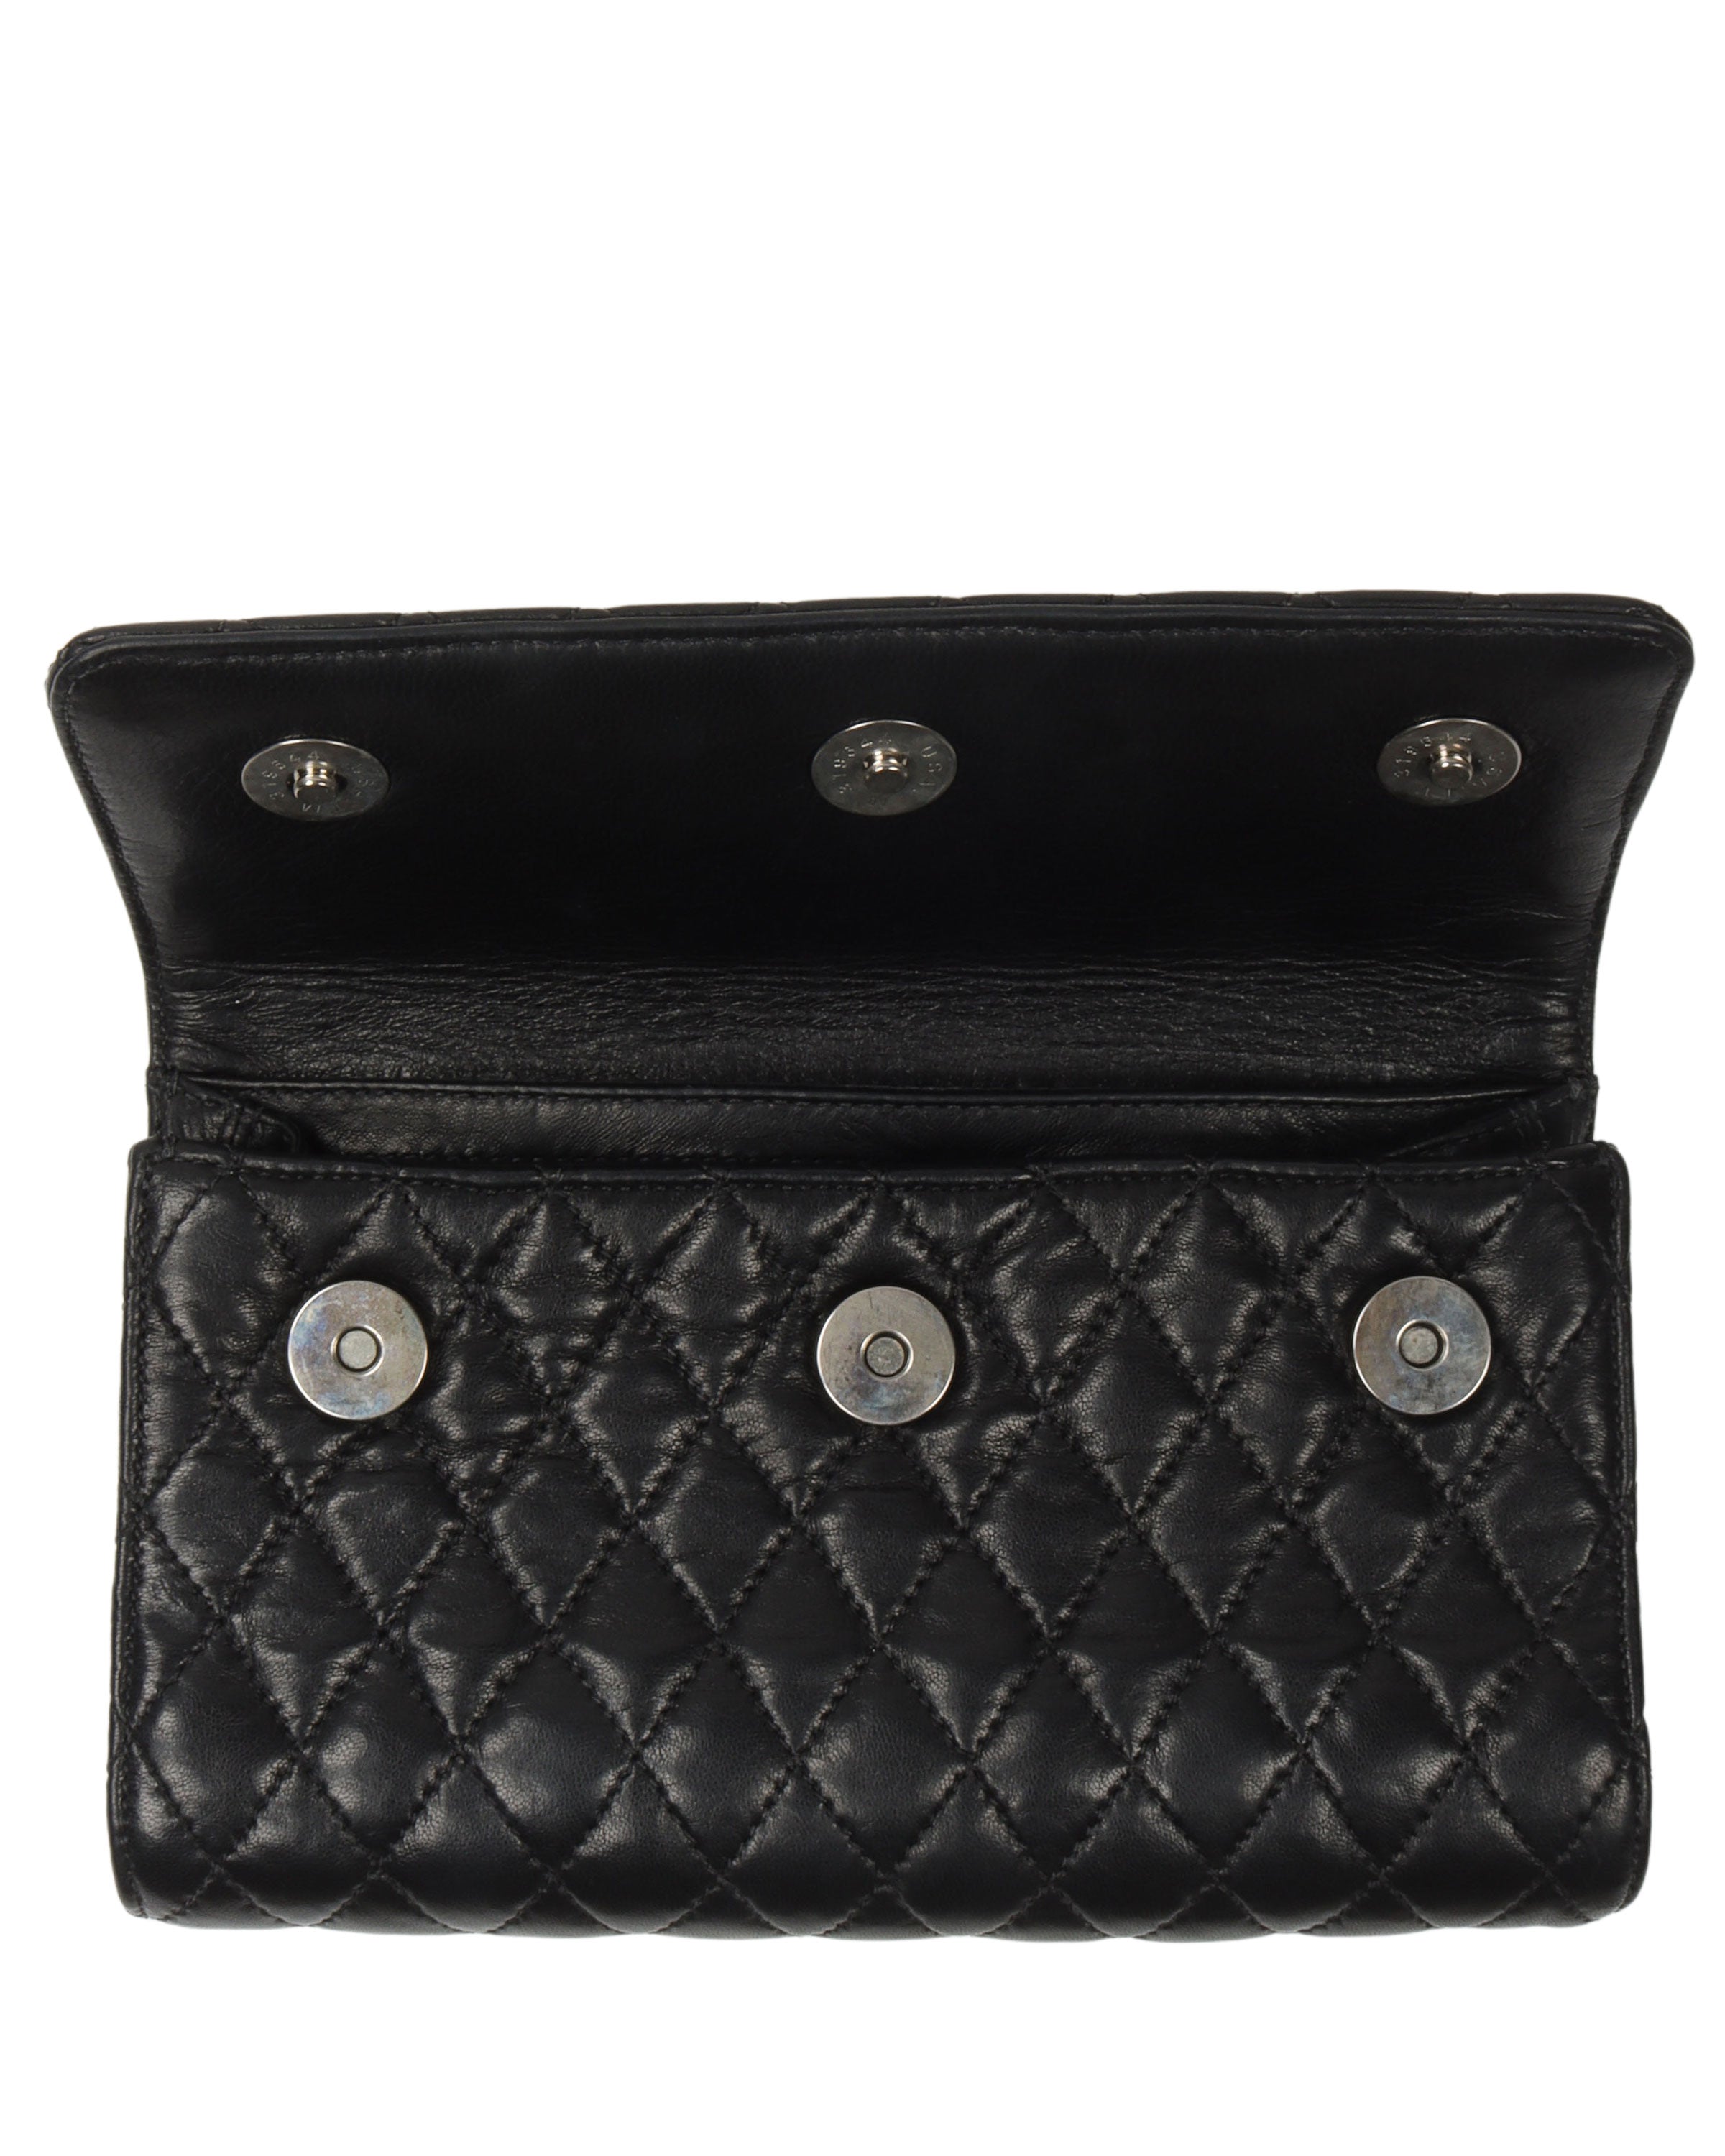 Quilted Leather "Fleur De Lis" Folding Wallet